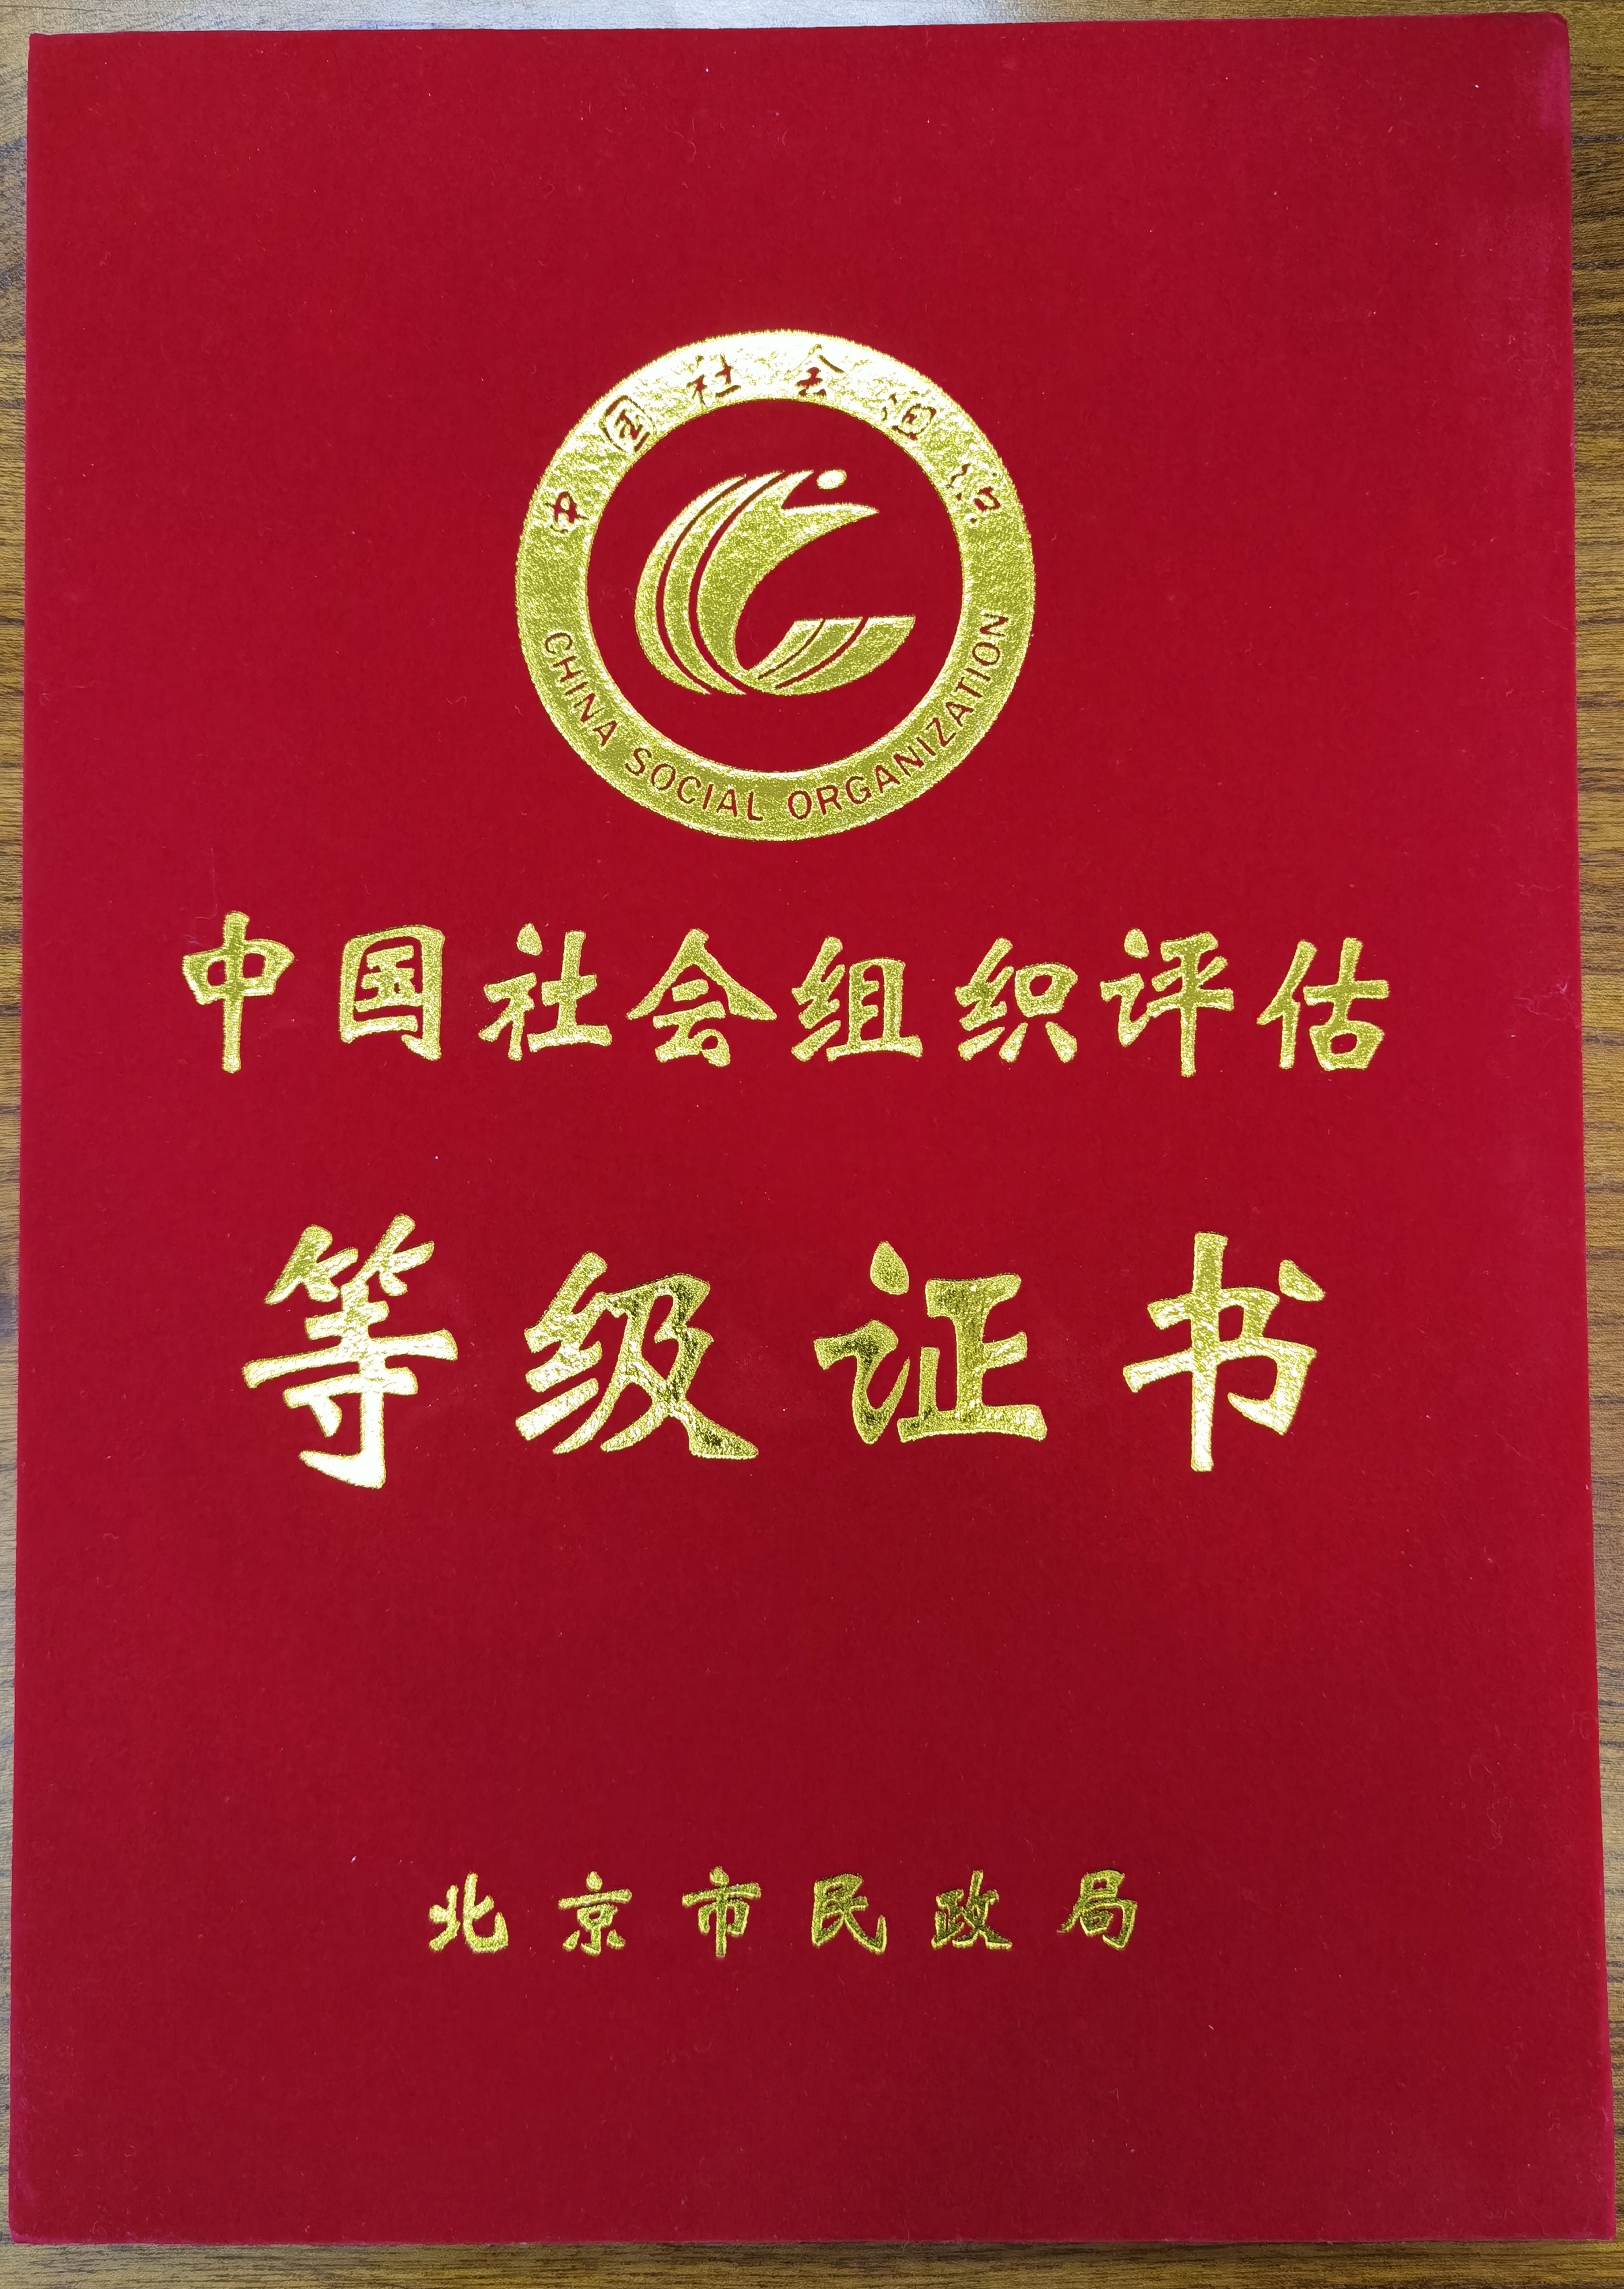 北京新闻文化研究所被评为4A等级社会组织。